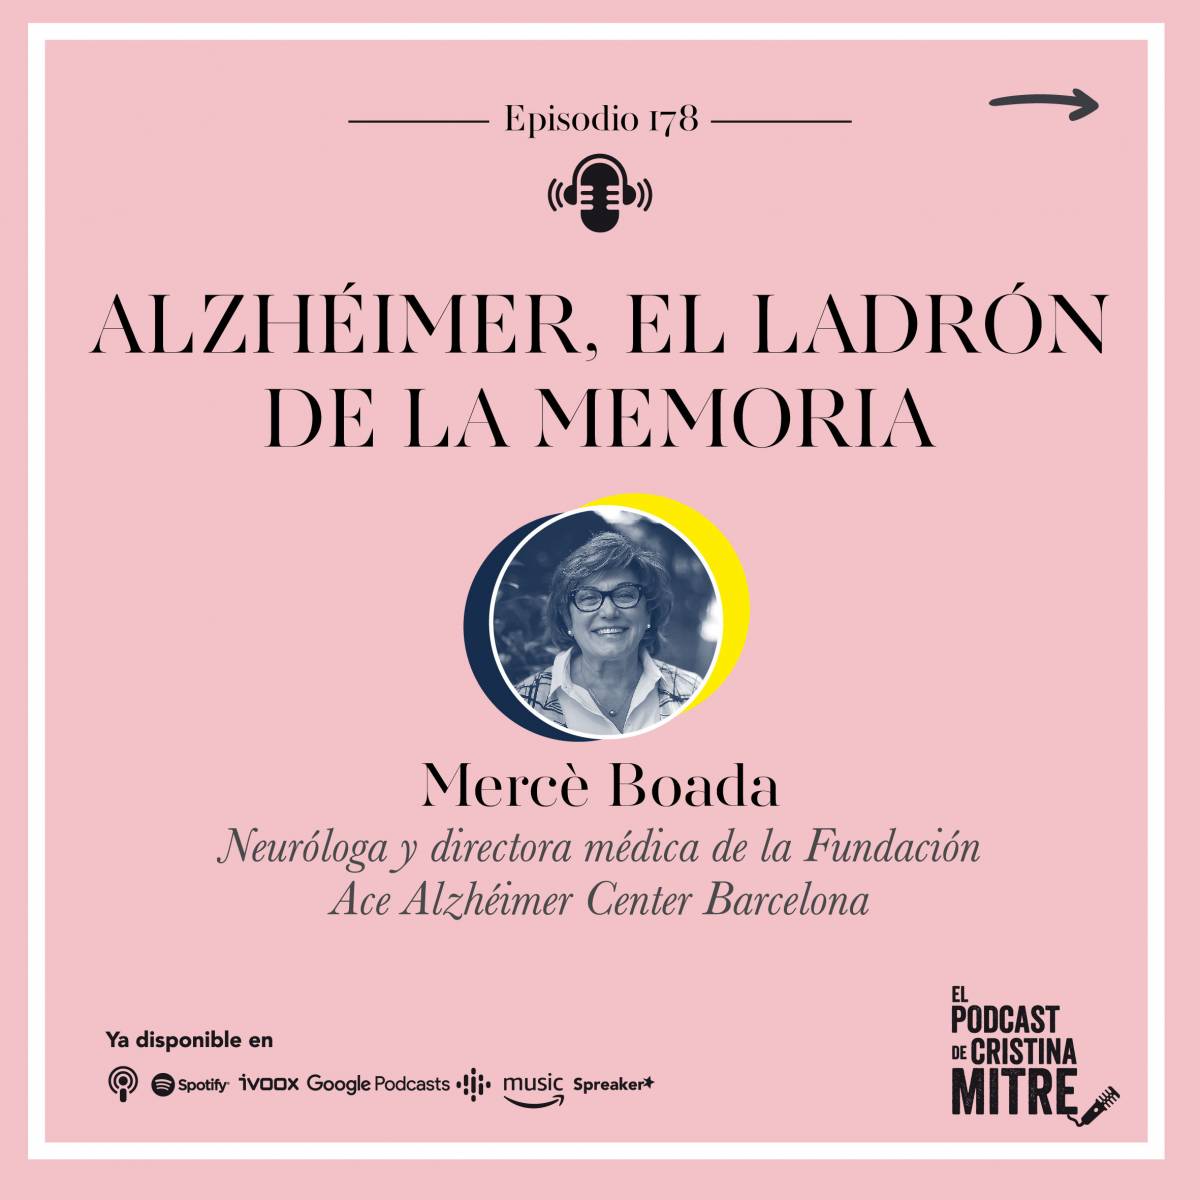 el podcast de cristina Mitre Mercé Boada Alzheimer